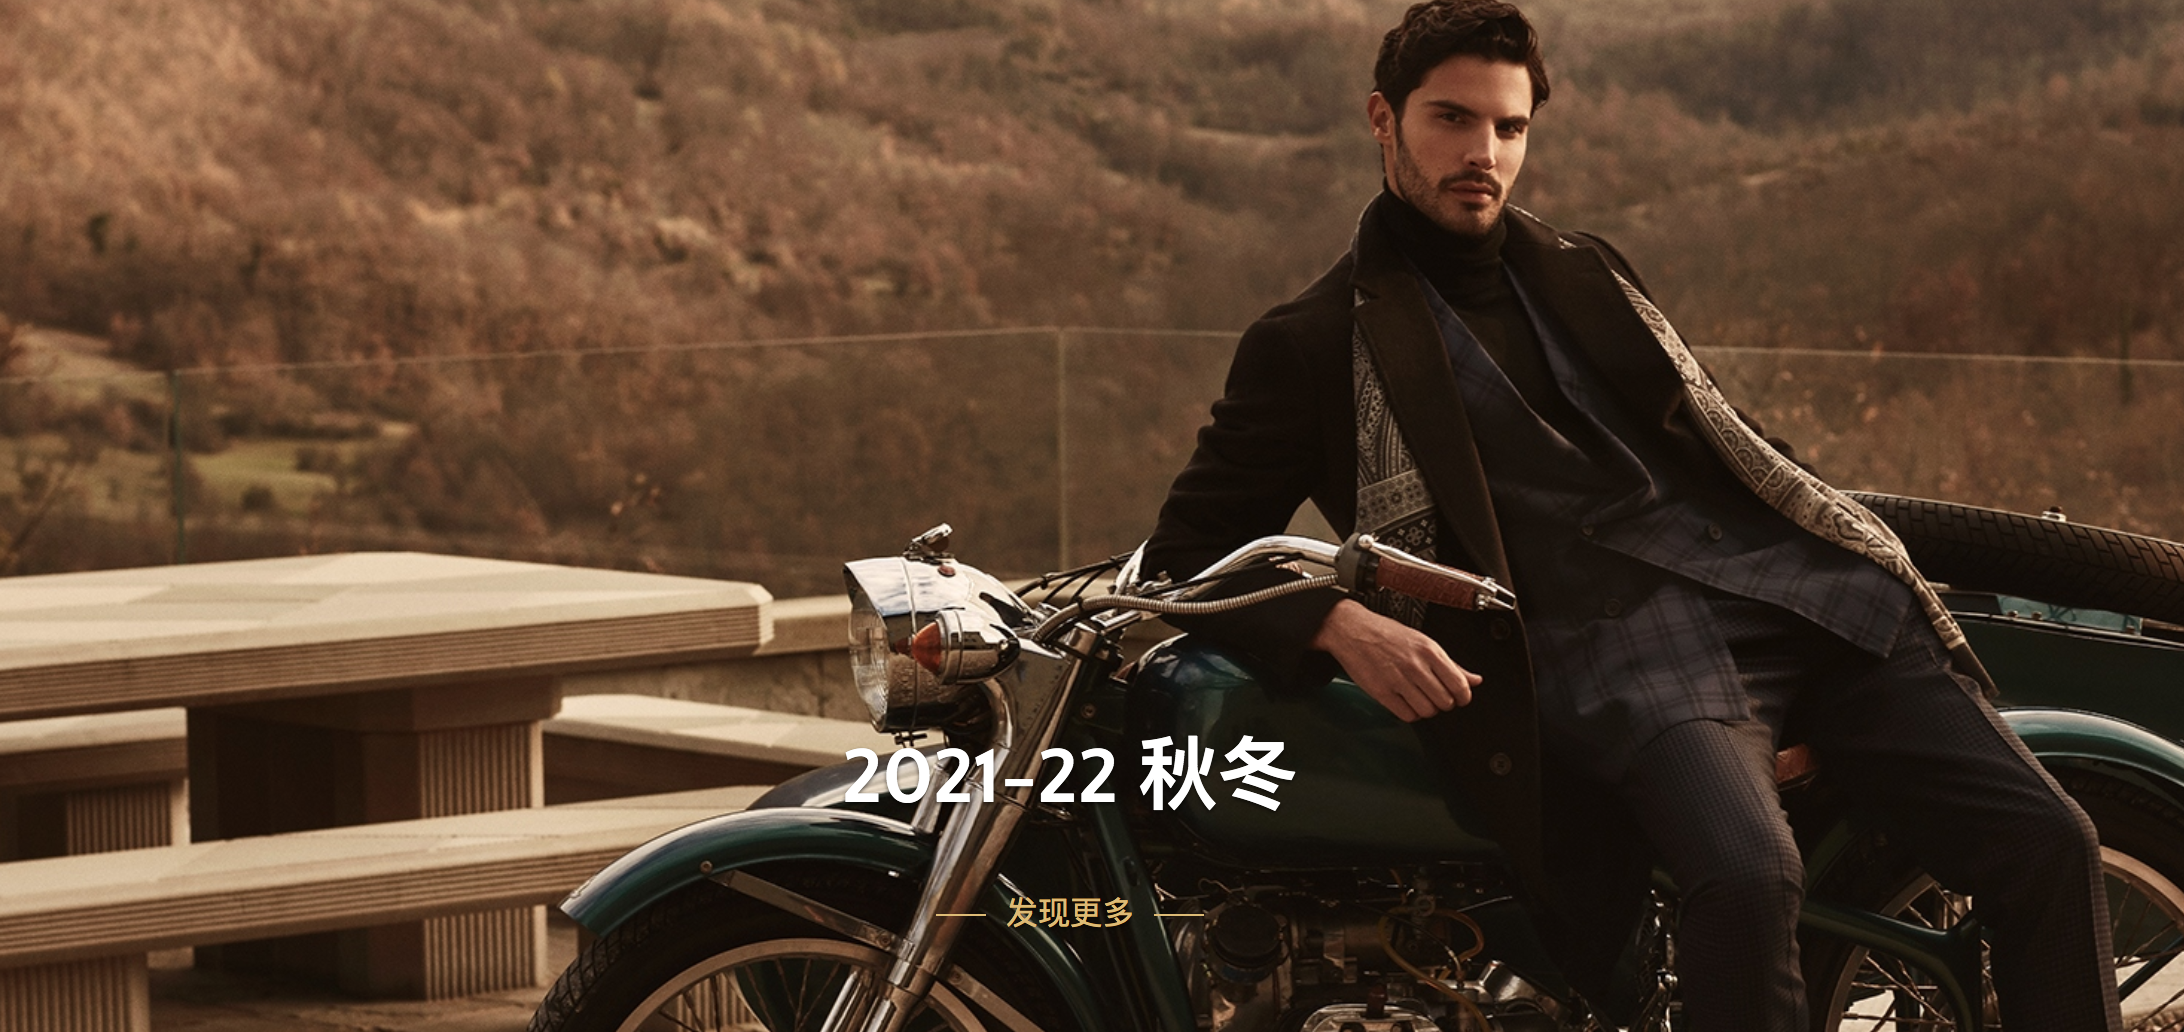 意大利奢侈男装品牌 Stefano Ricci 业绩持续恢复，中国位列第一大市场